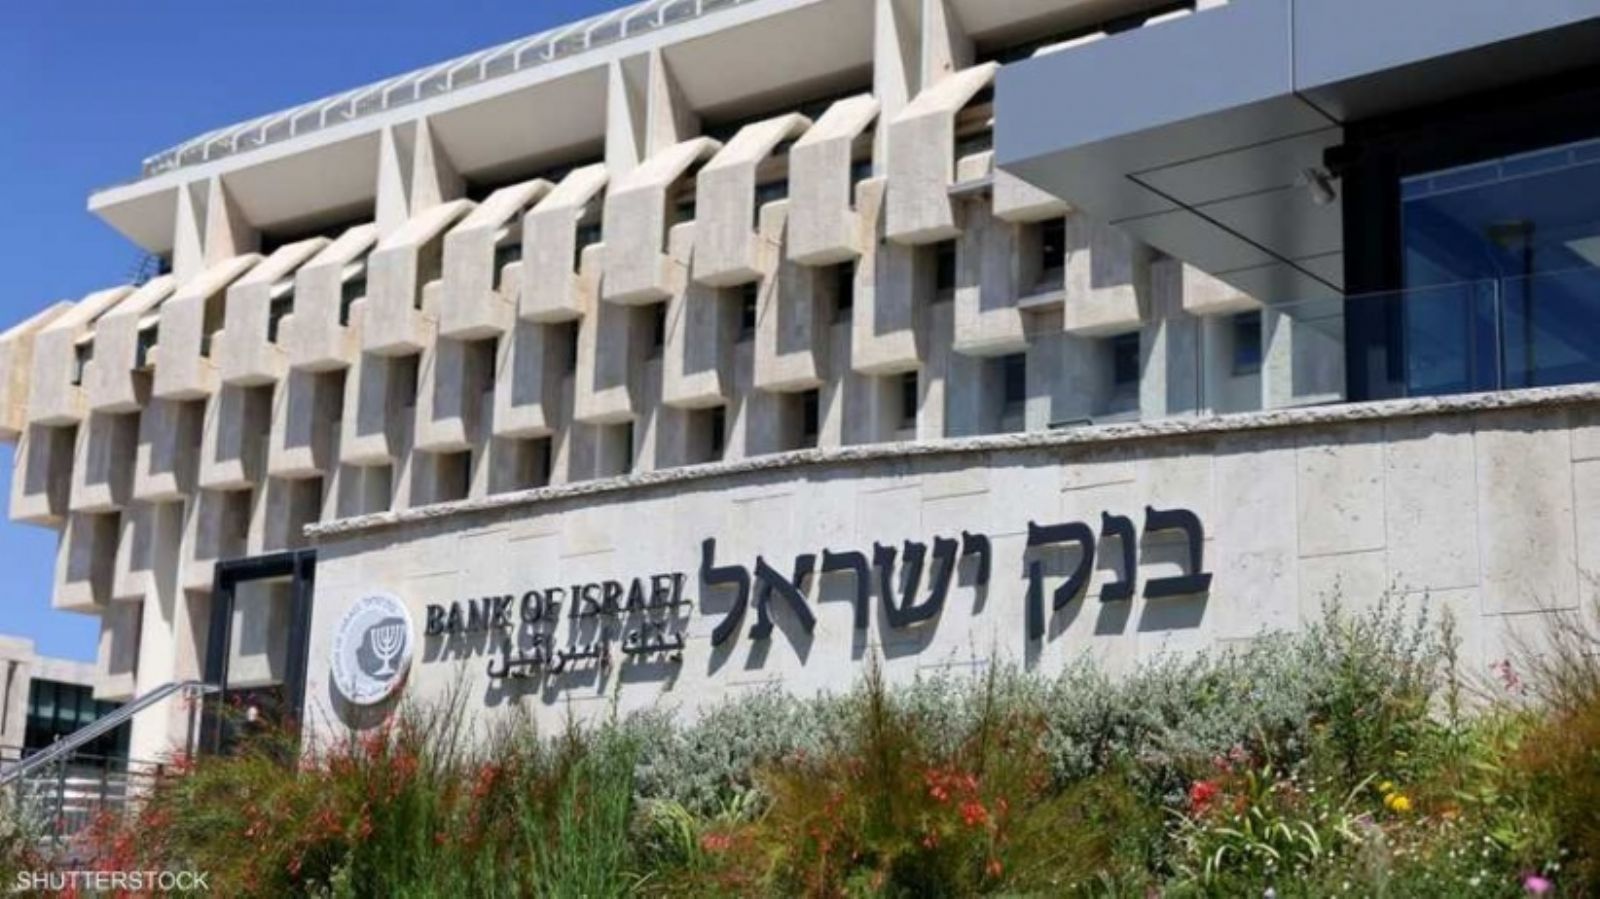 للمرة الأولى.. بنك إسرائيل يبيع النقد الأجنبي لدعم الشيكل